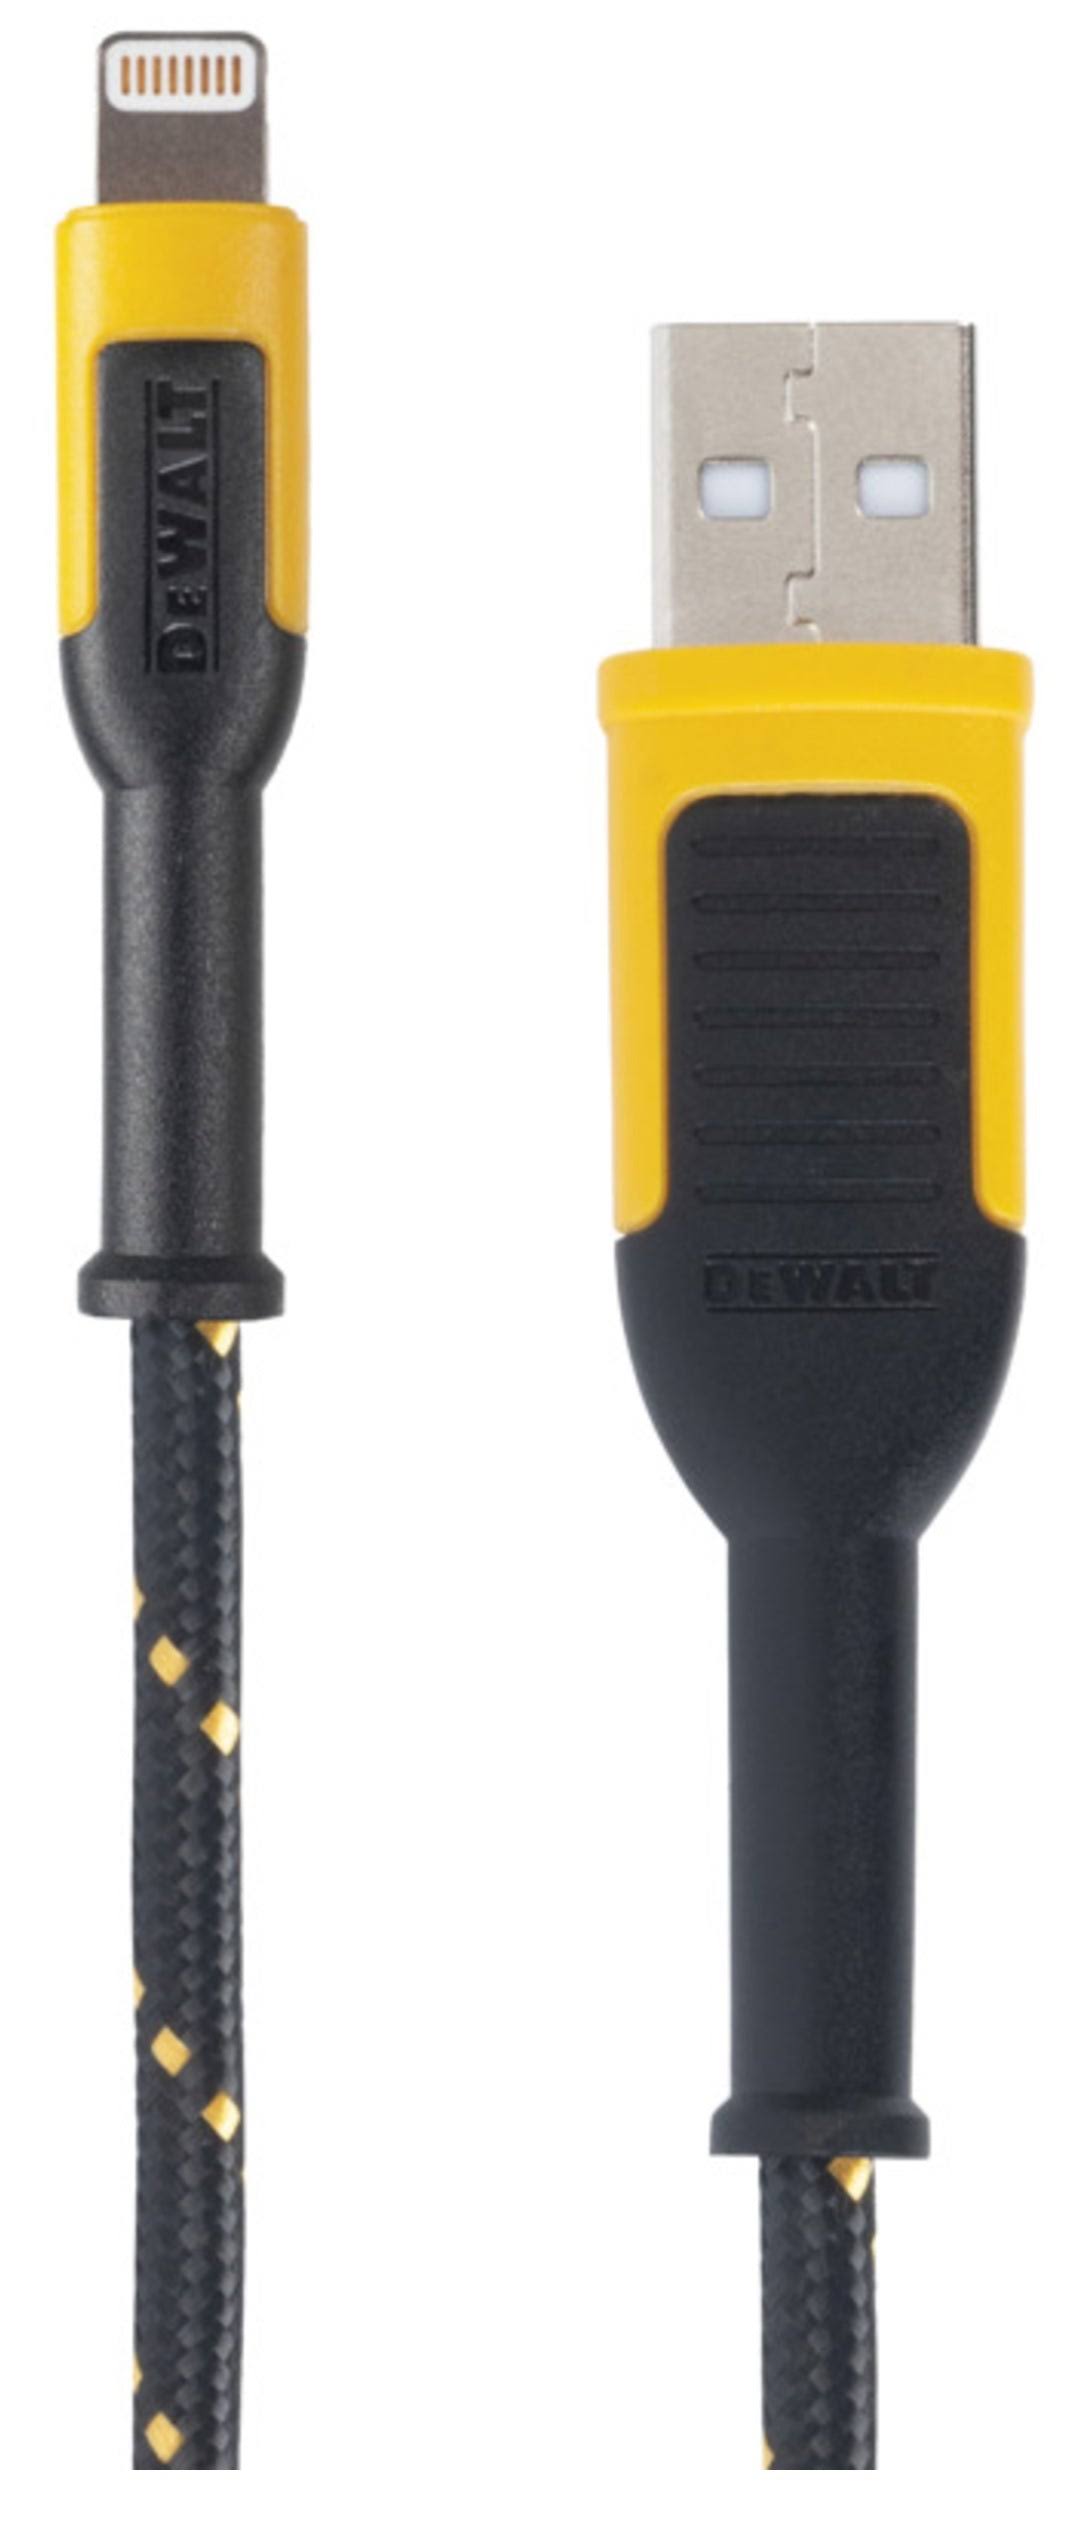 DeWalt 131 1325 DW2 Charger Cable, iOS, USB, Black/Yellow Sheath